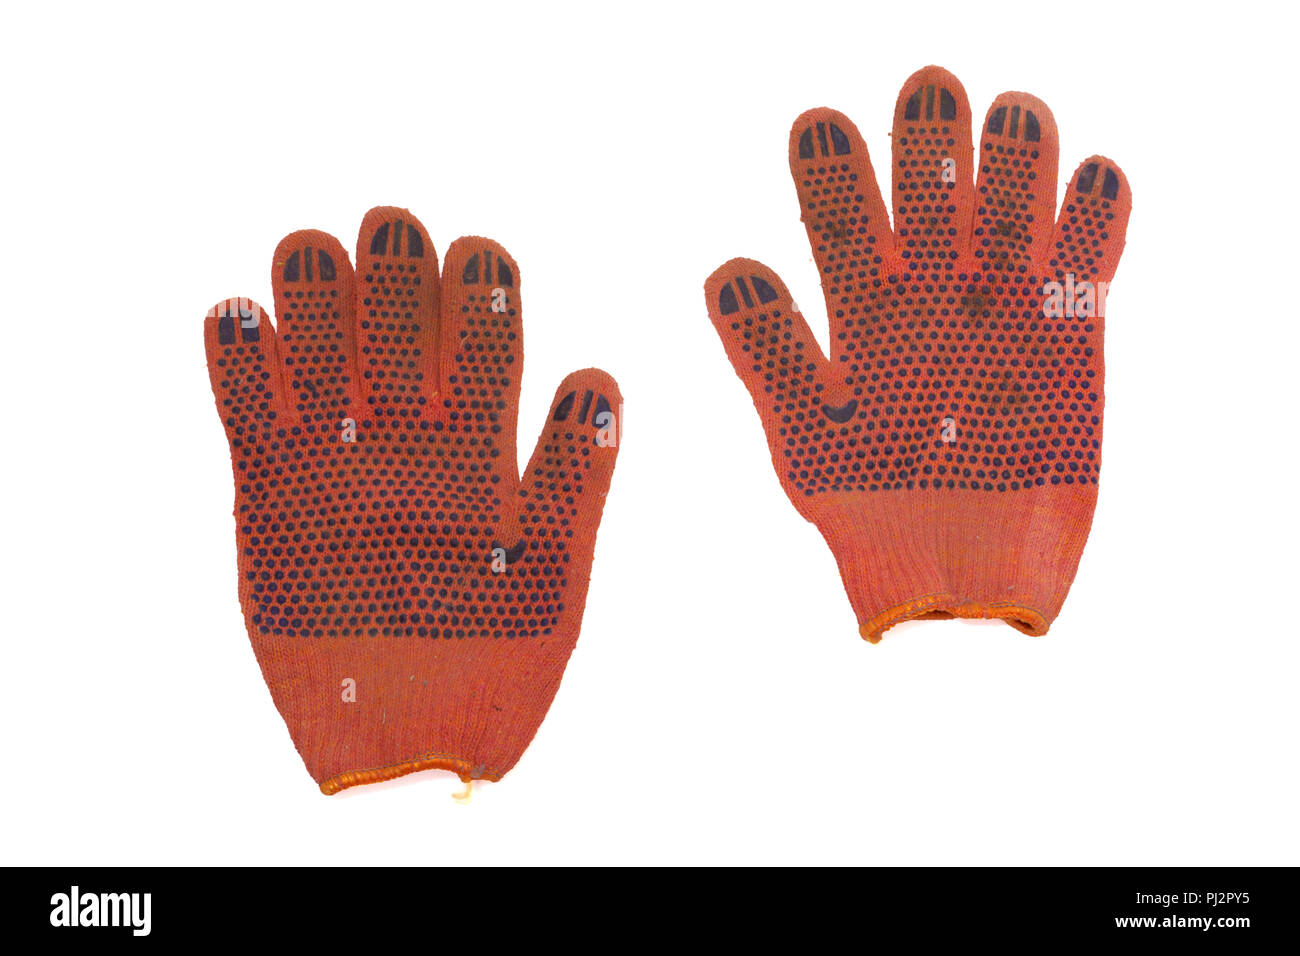 Paire de gants de protection orange. couvert par le côté de travail en caoutchouc antidérapant points. isolé, clipping path Banque D'Images